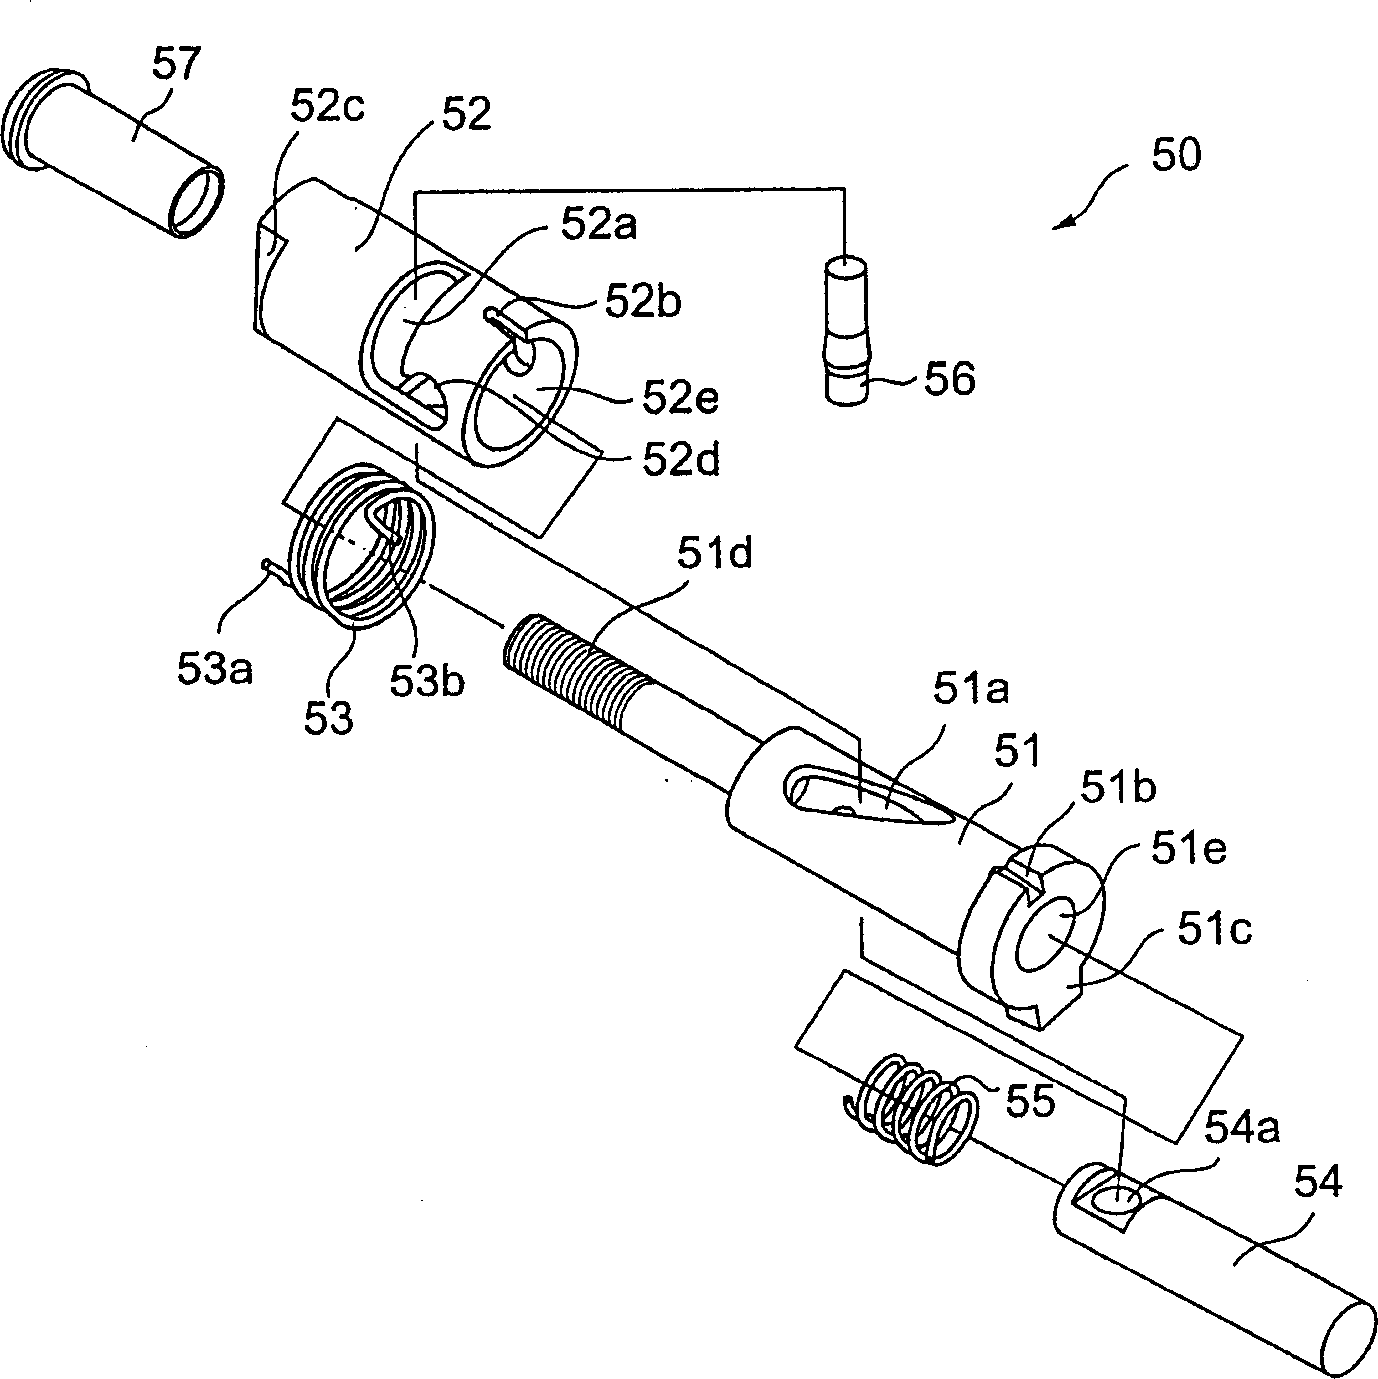 Hinge mechanism of fixed belt